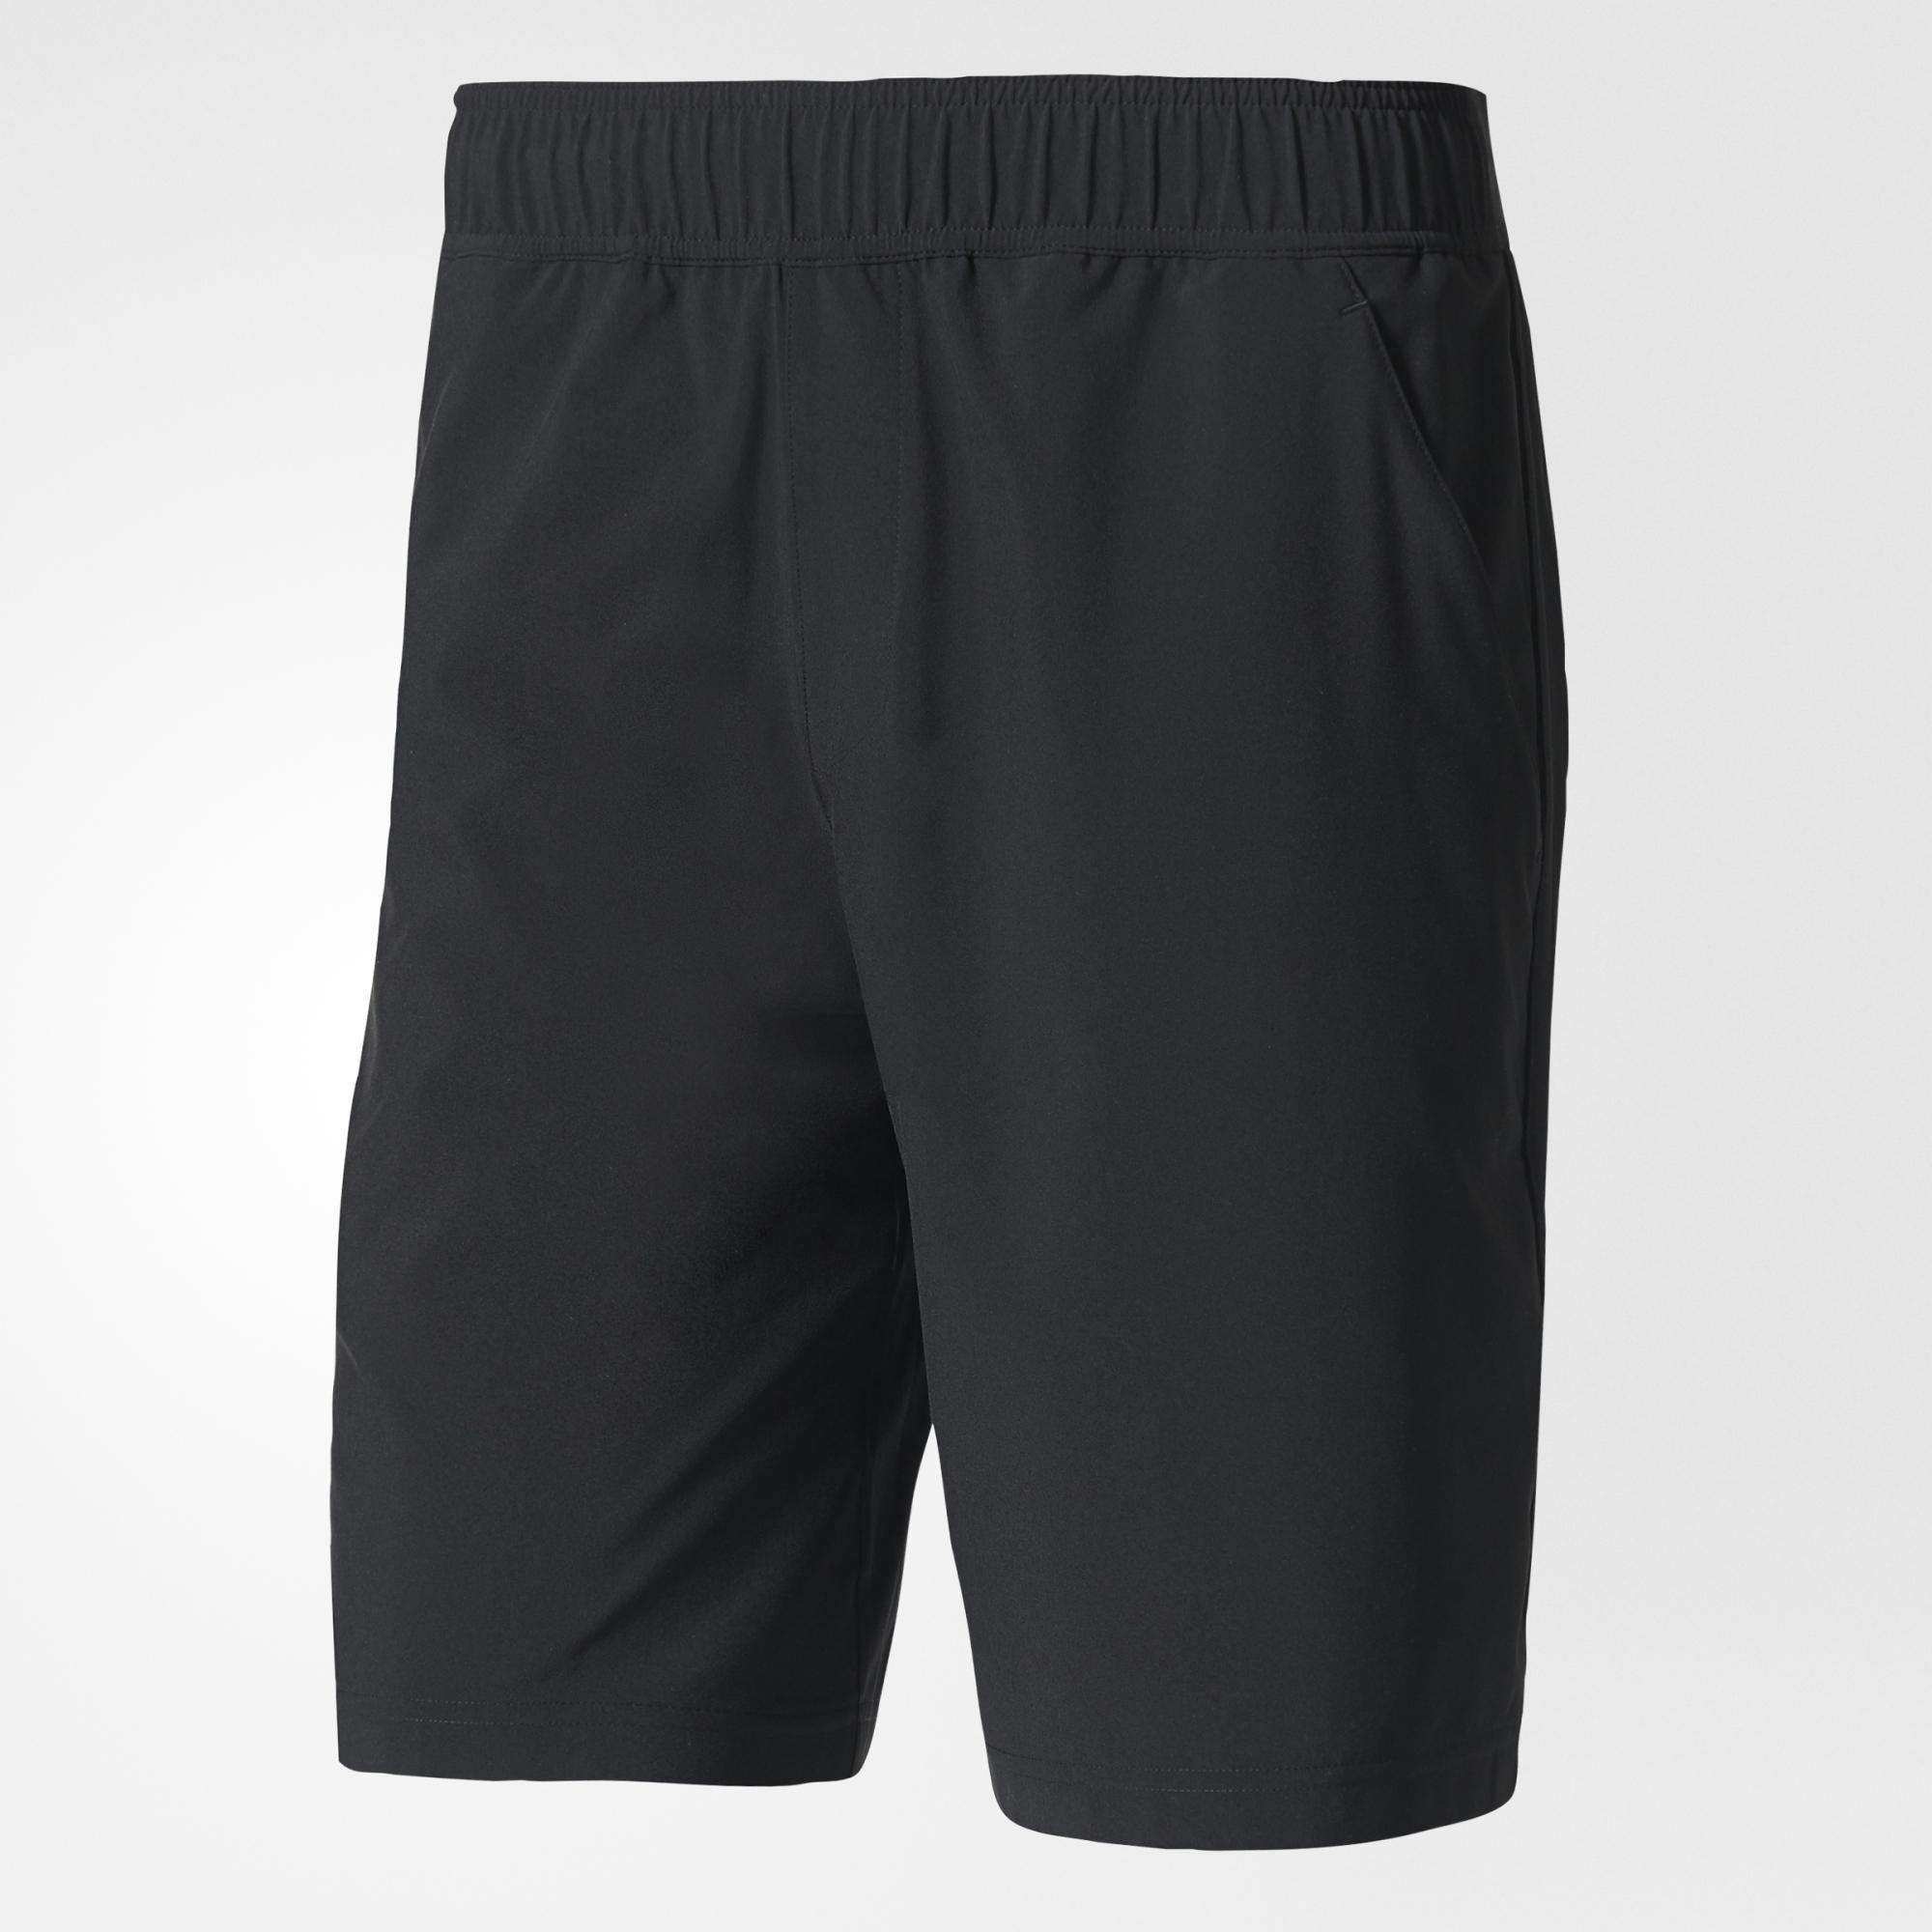 Adidas Mens Advantage Shorts - Black - Tennisnuts.com